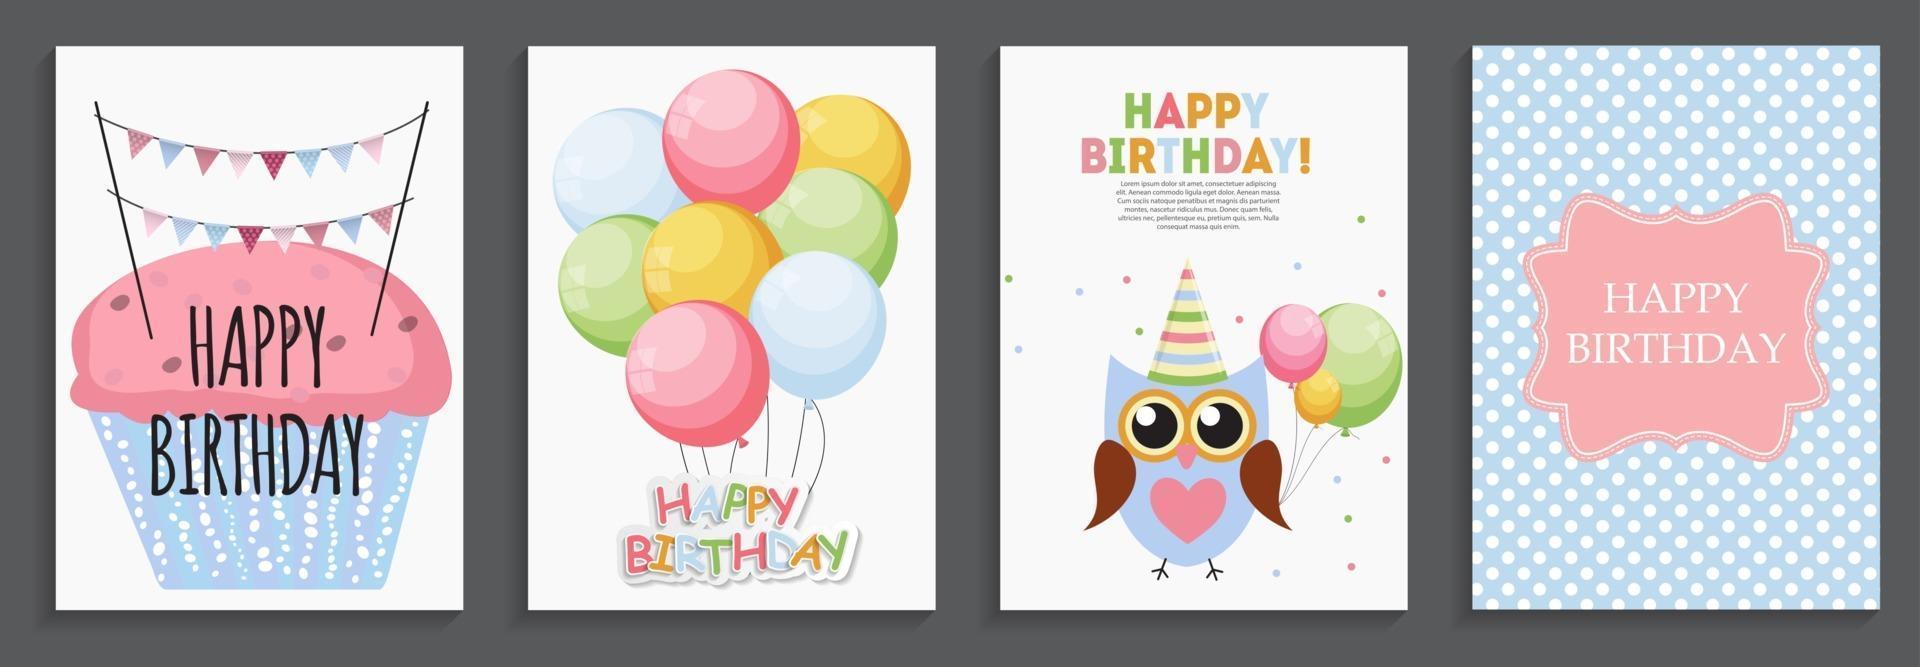 Alles Gute zum Geburtstag, Feiertagsgruß und Einladungskartenschablone gesetzt mit Luftballons und Fahnen vektor